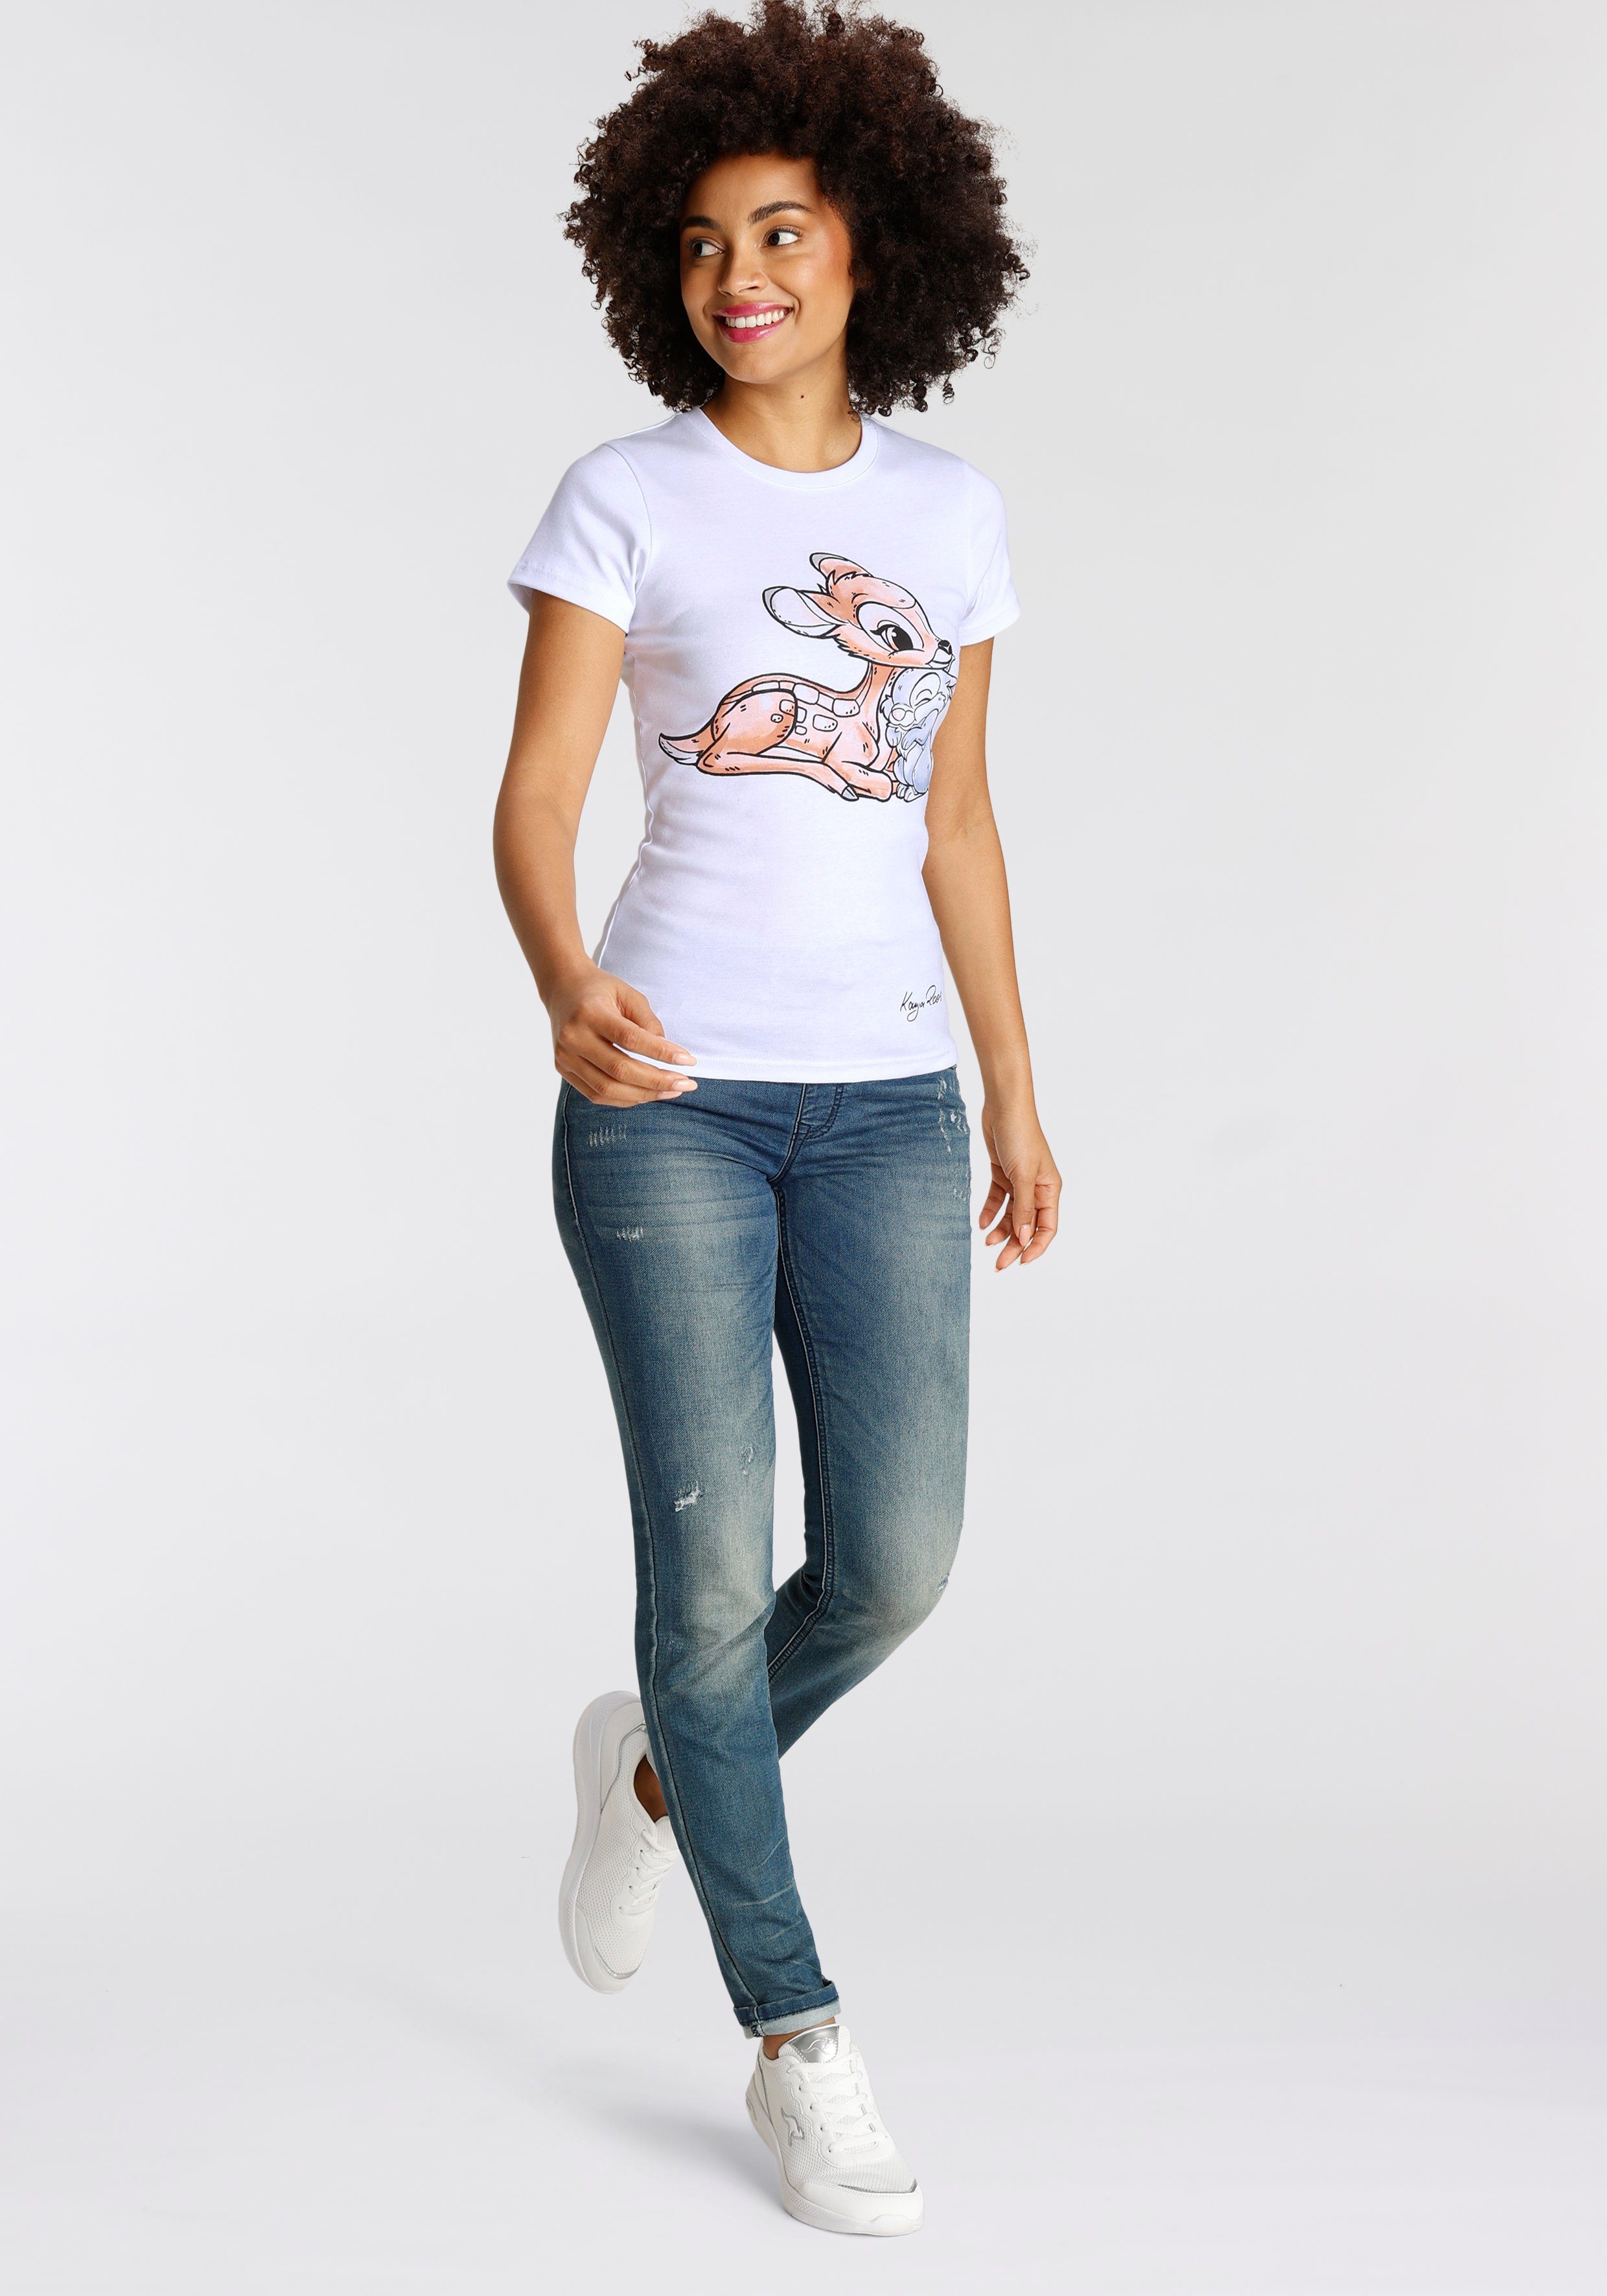 KangaROOS T-Shirt Originaldesign mit lizenziertem weiß